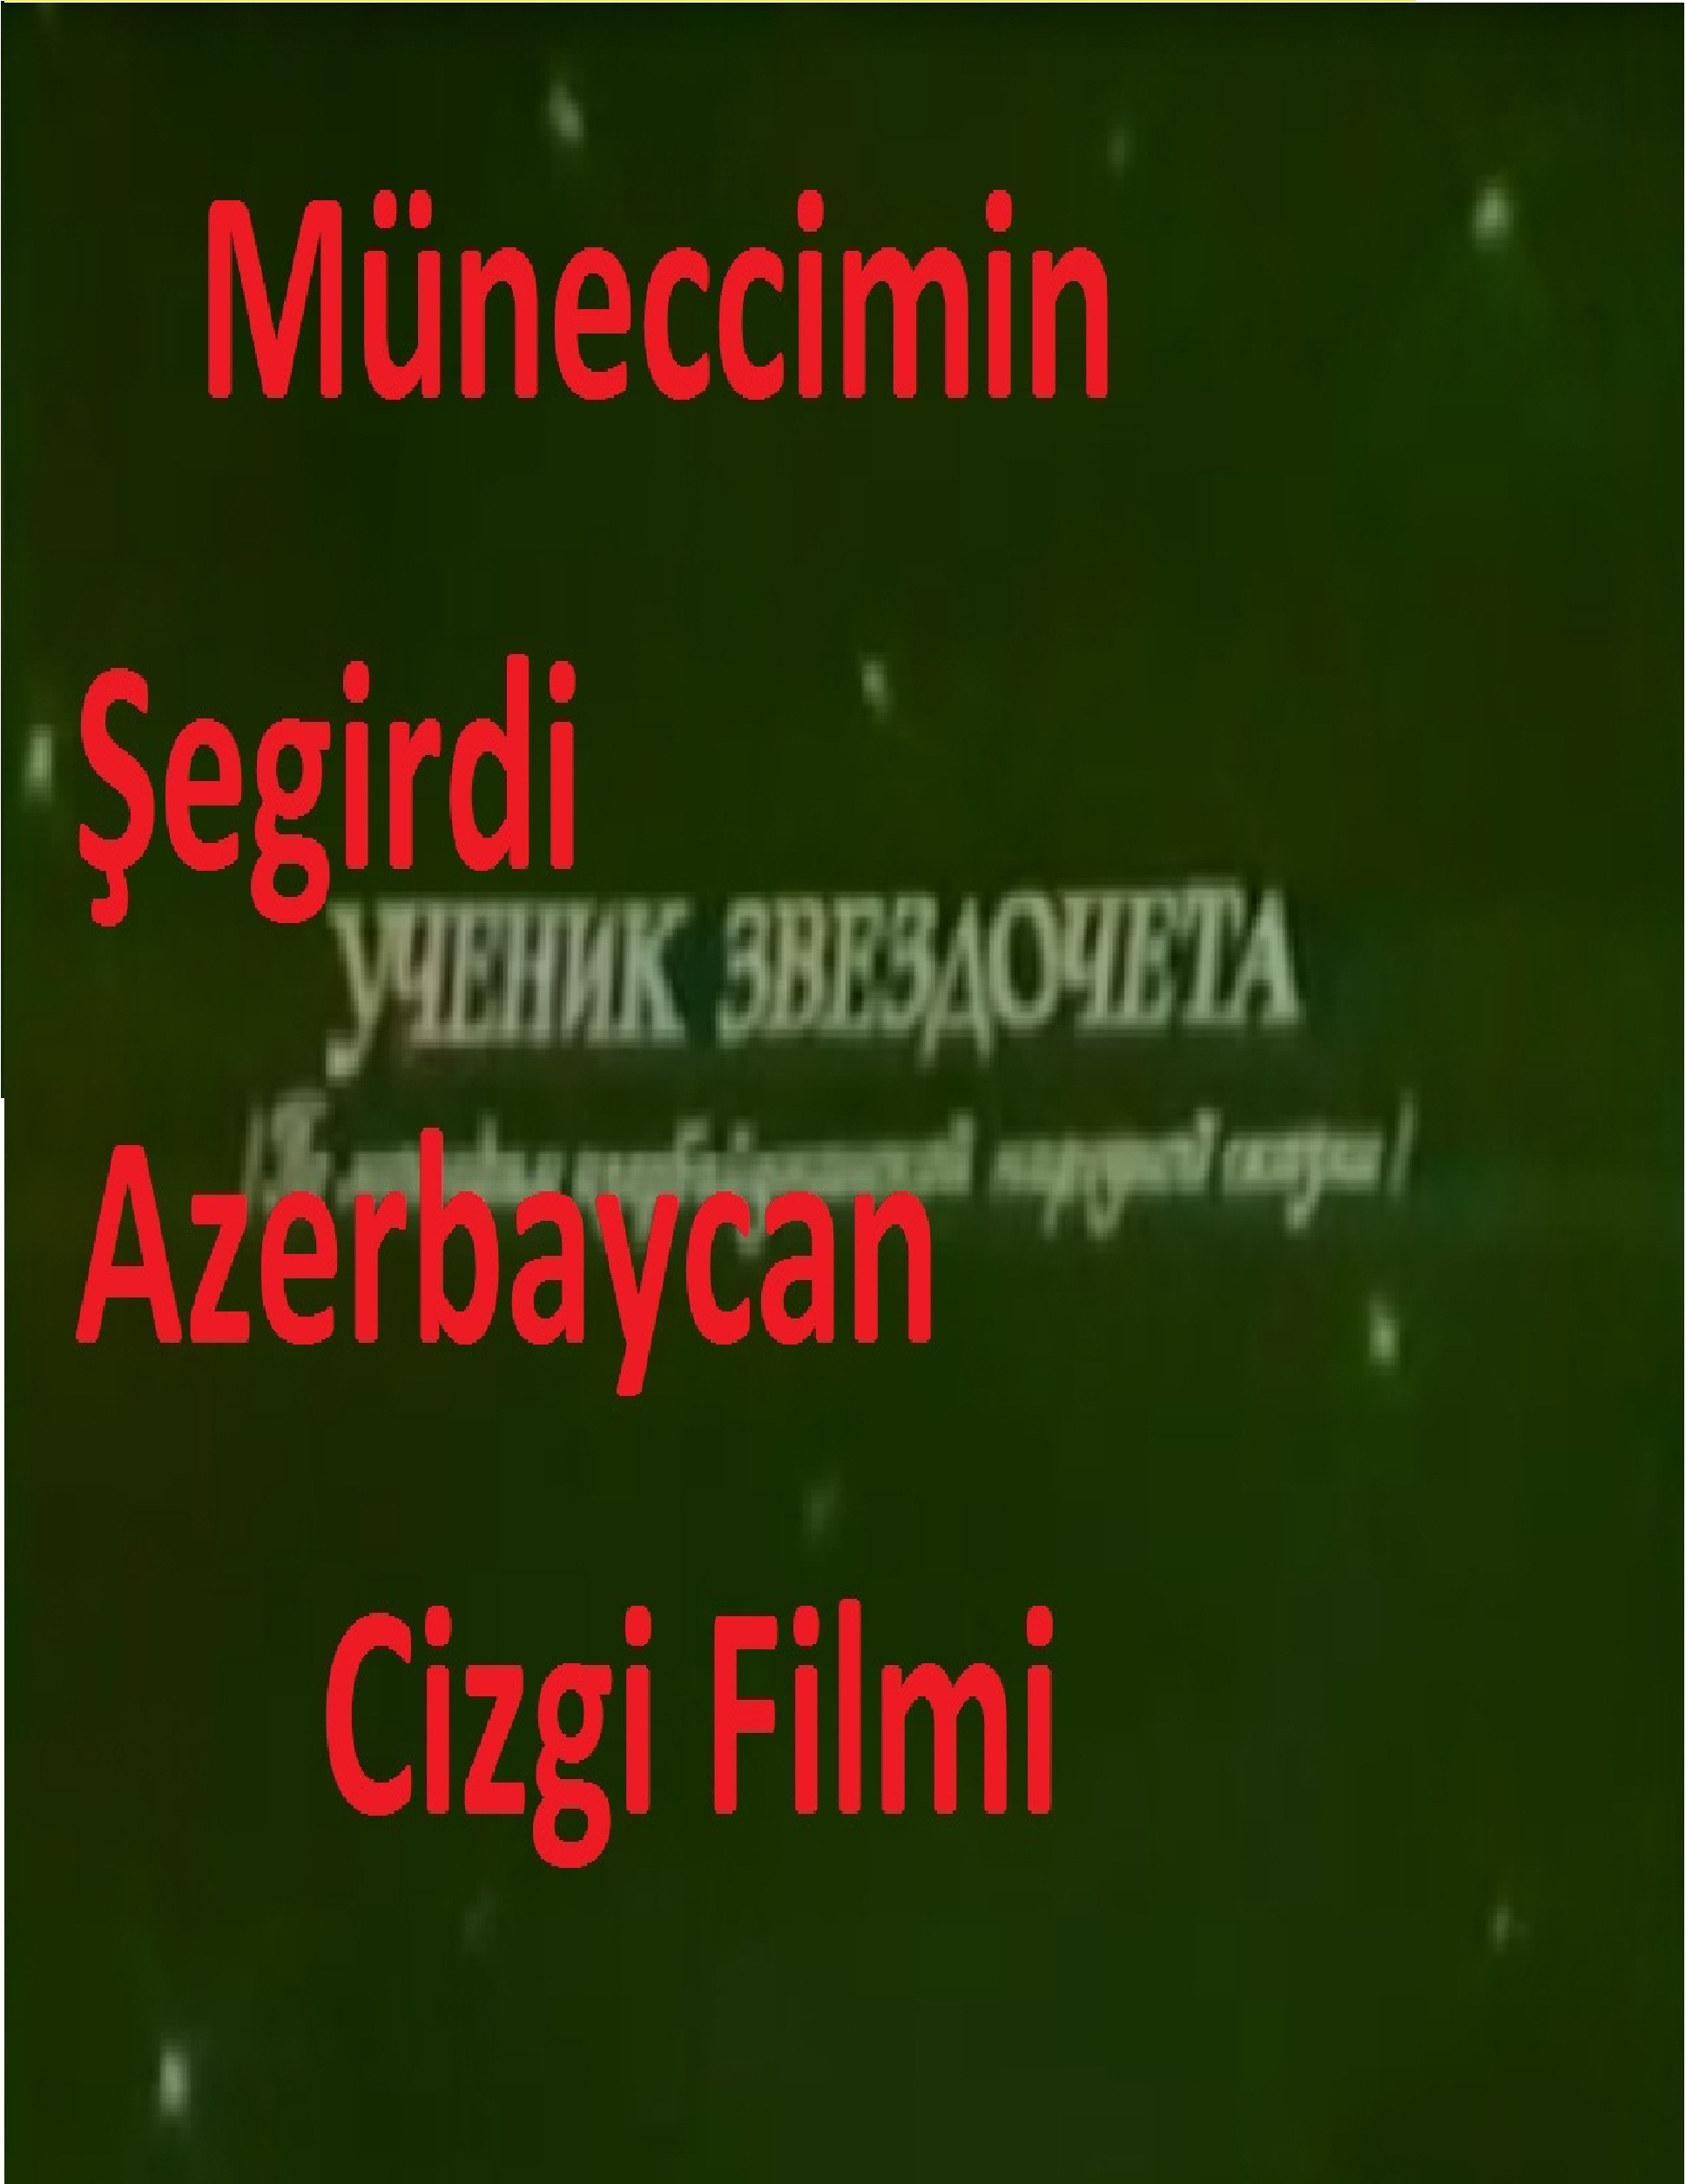 Müneccimin şegirdi-Azerbaycan Cizgi Filmi